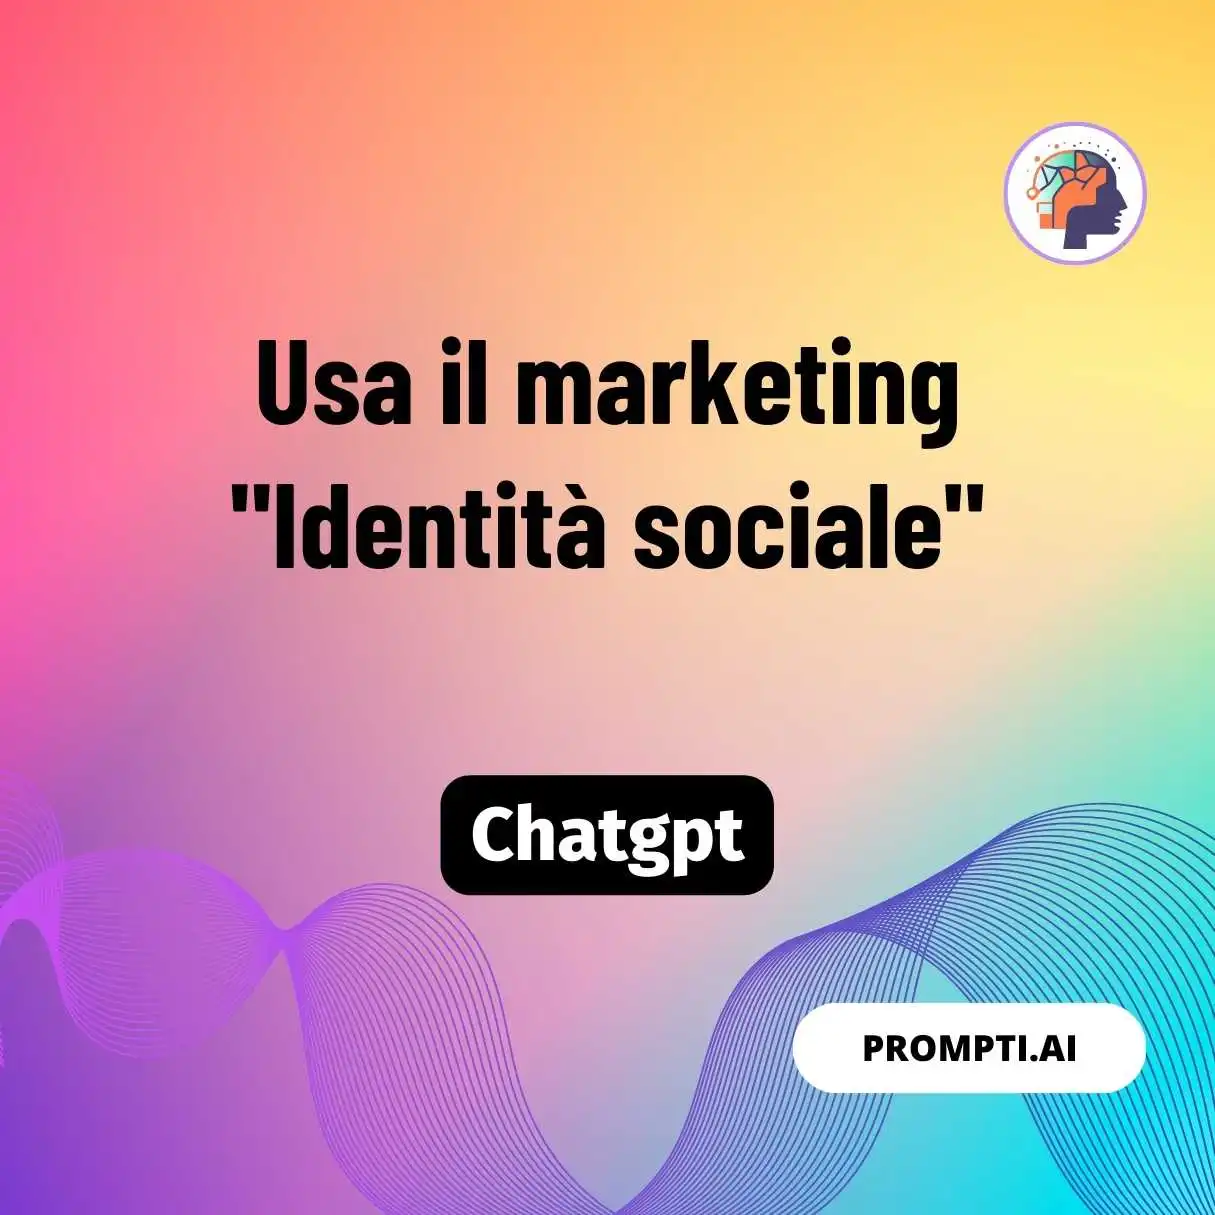 Usa il marketing “Identità sociale”